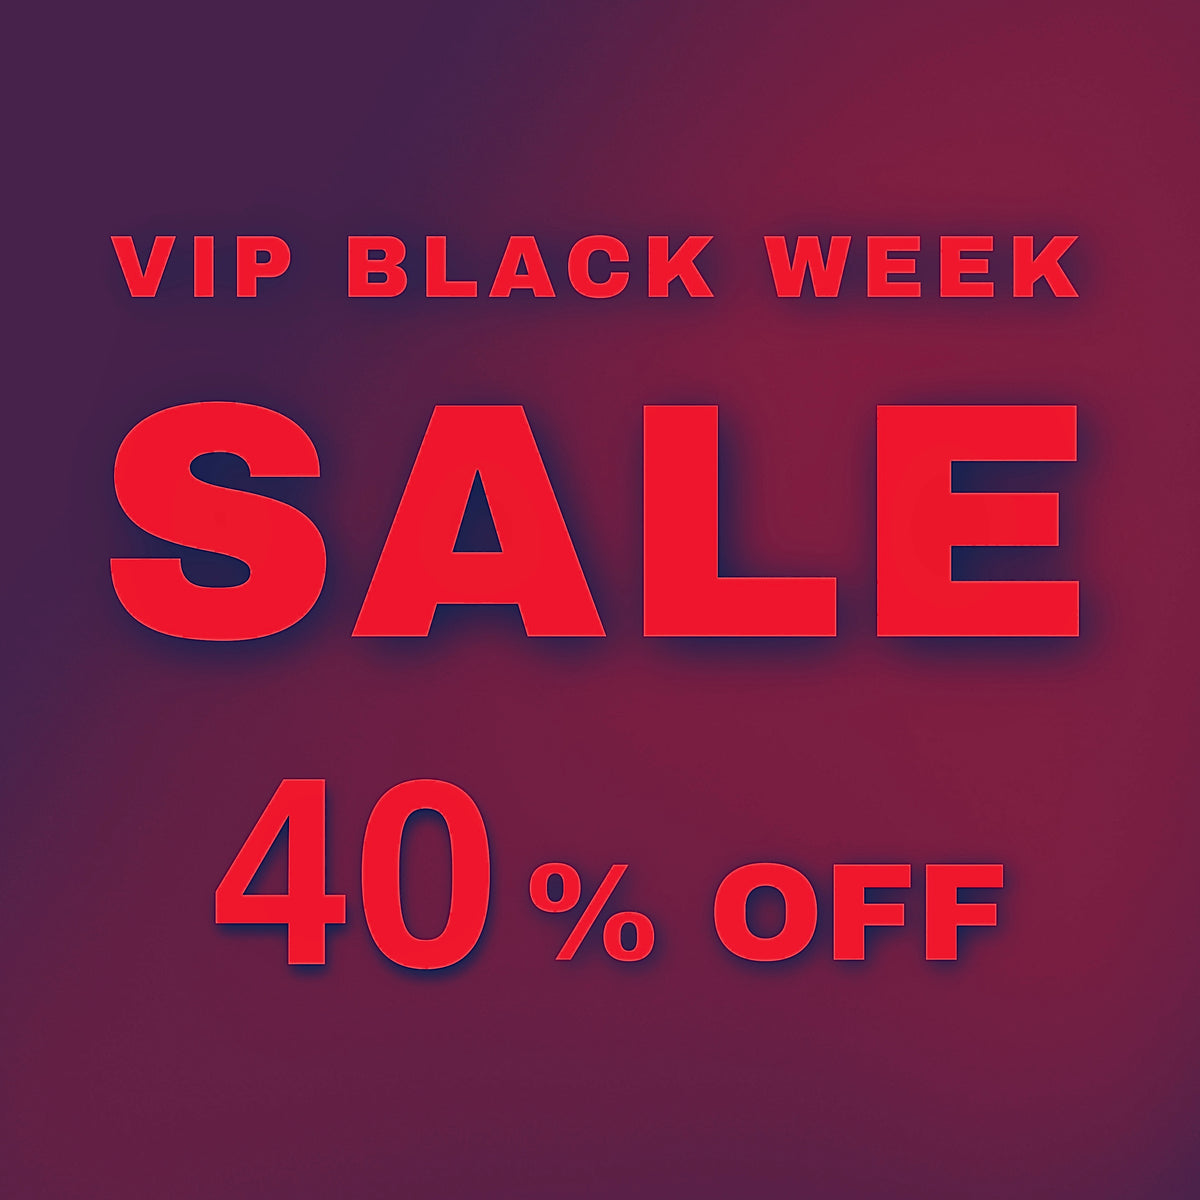 VIP BLACK WEEK SALE 40% OFF